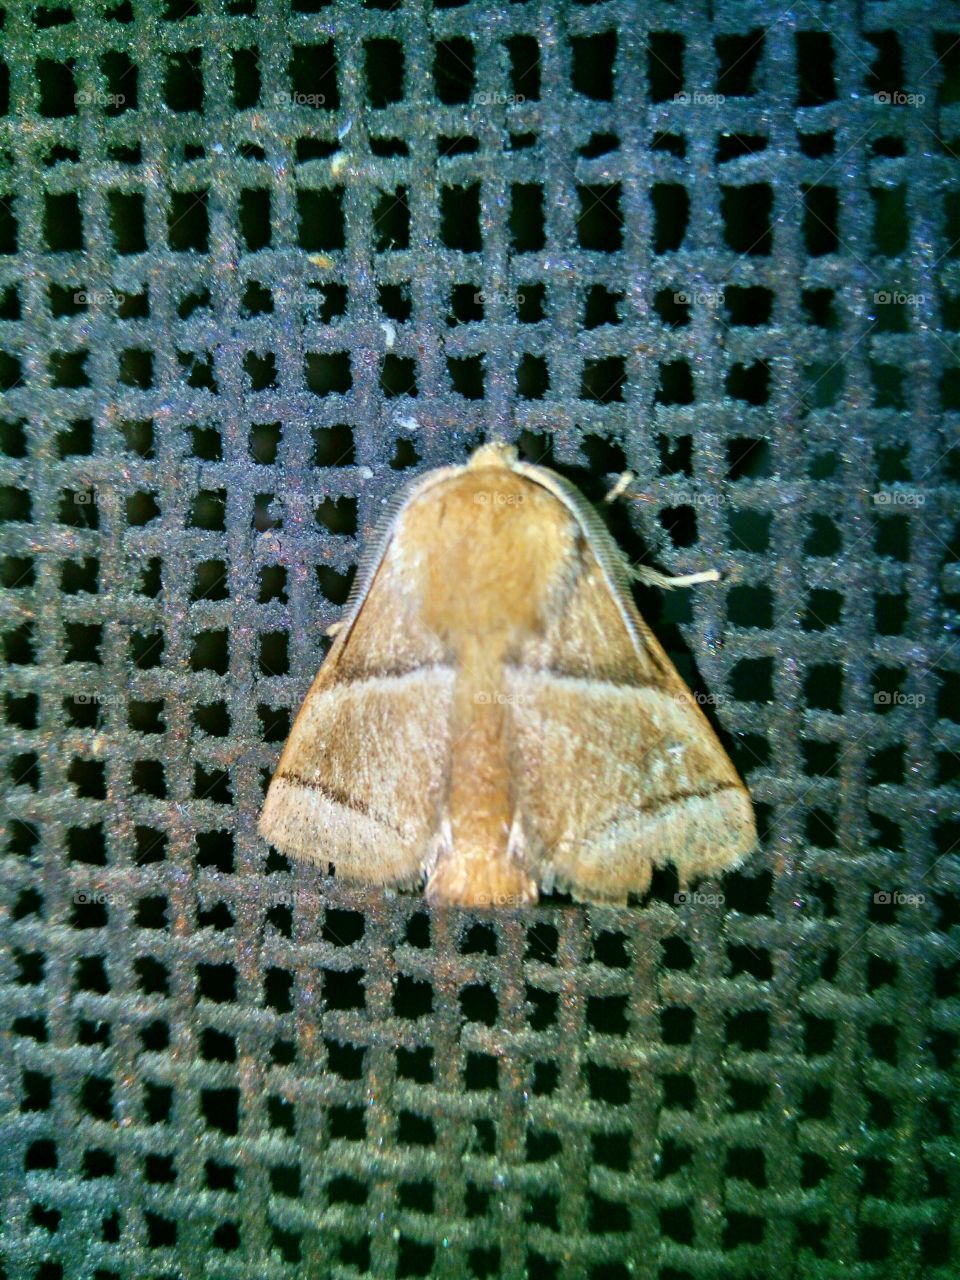 A Moth.